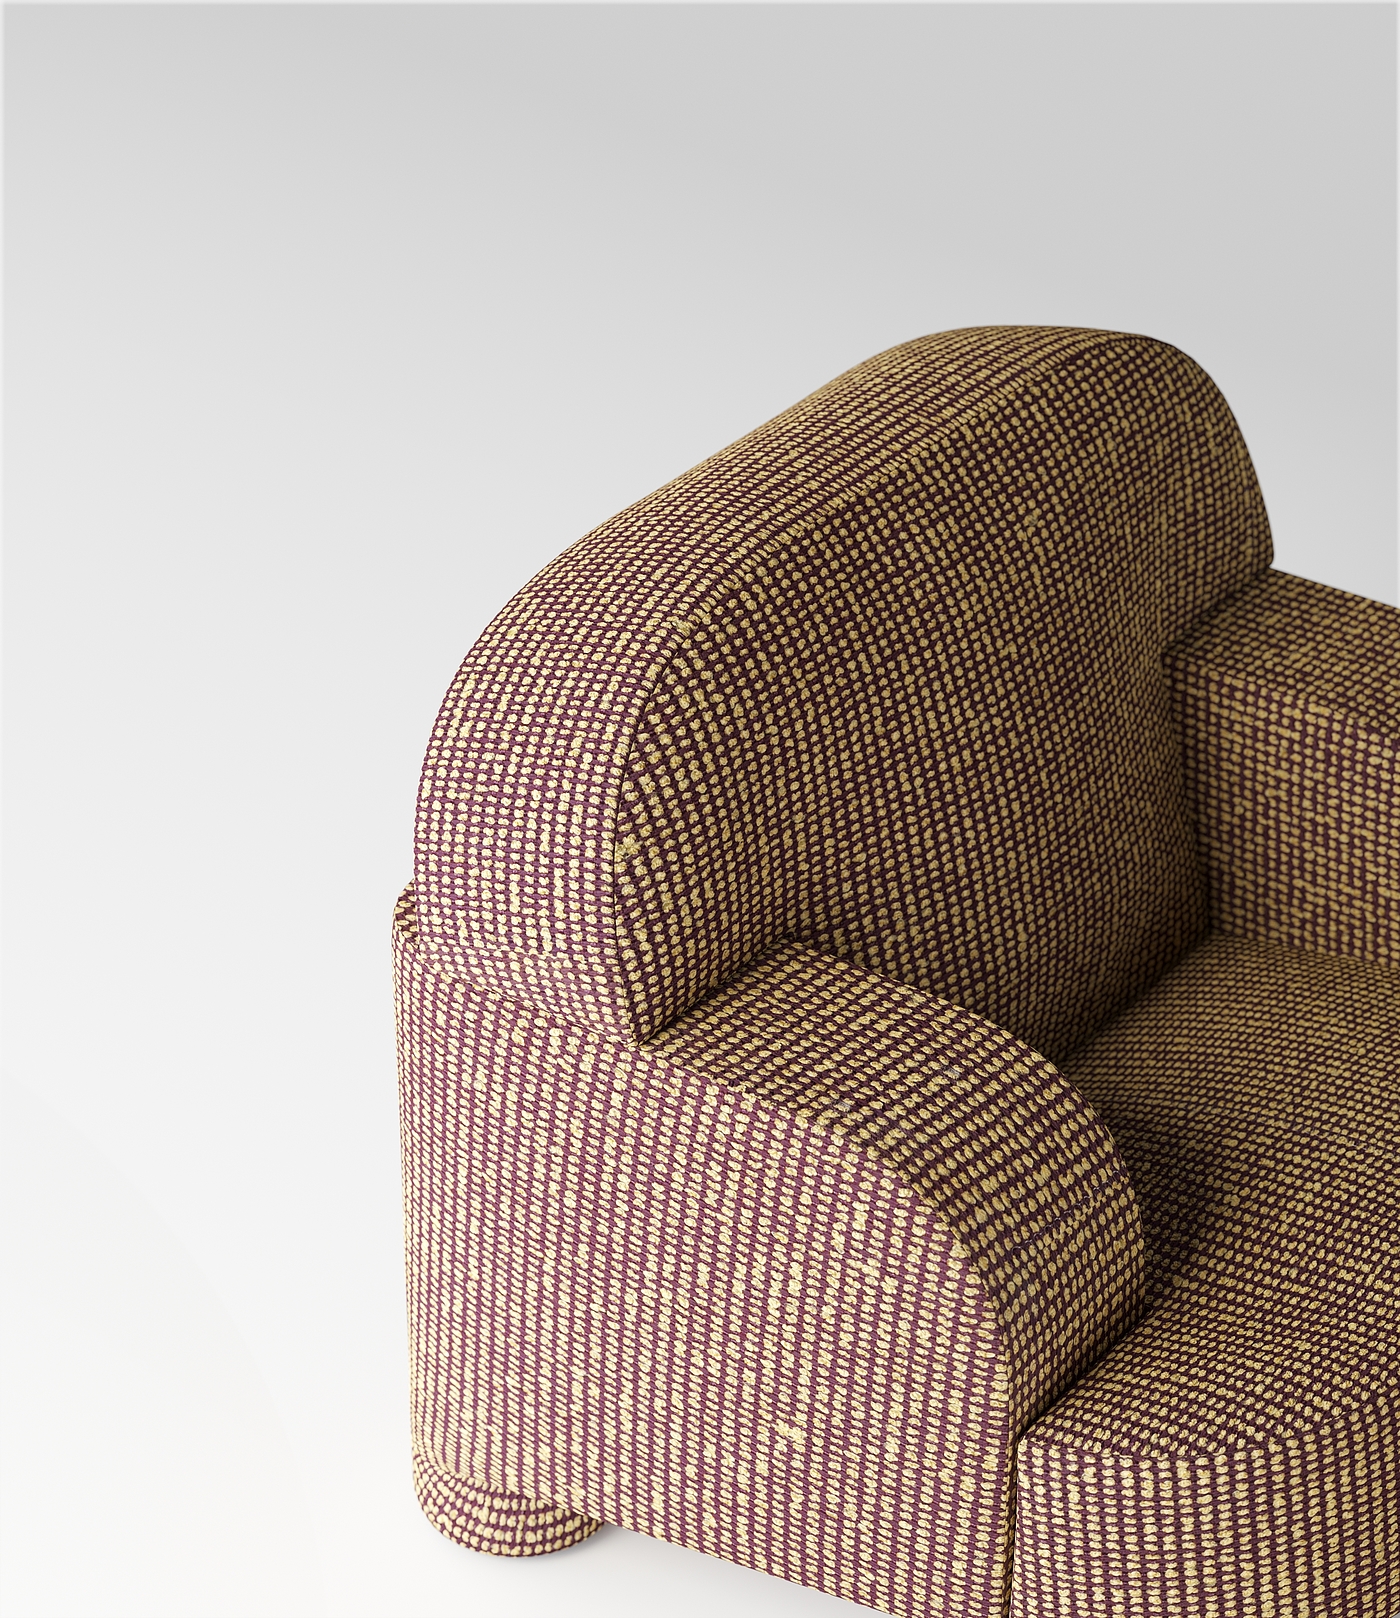 座椅，软垫，peel，产品设计，设计，产品，沙发，sofa，